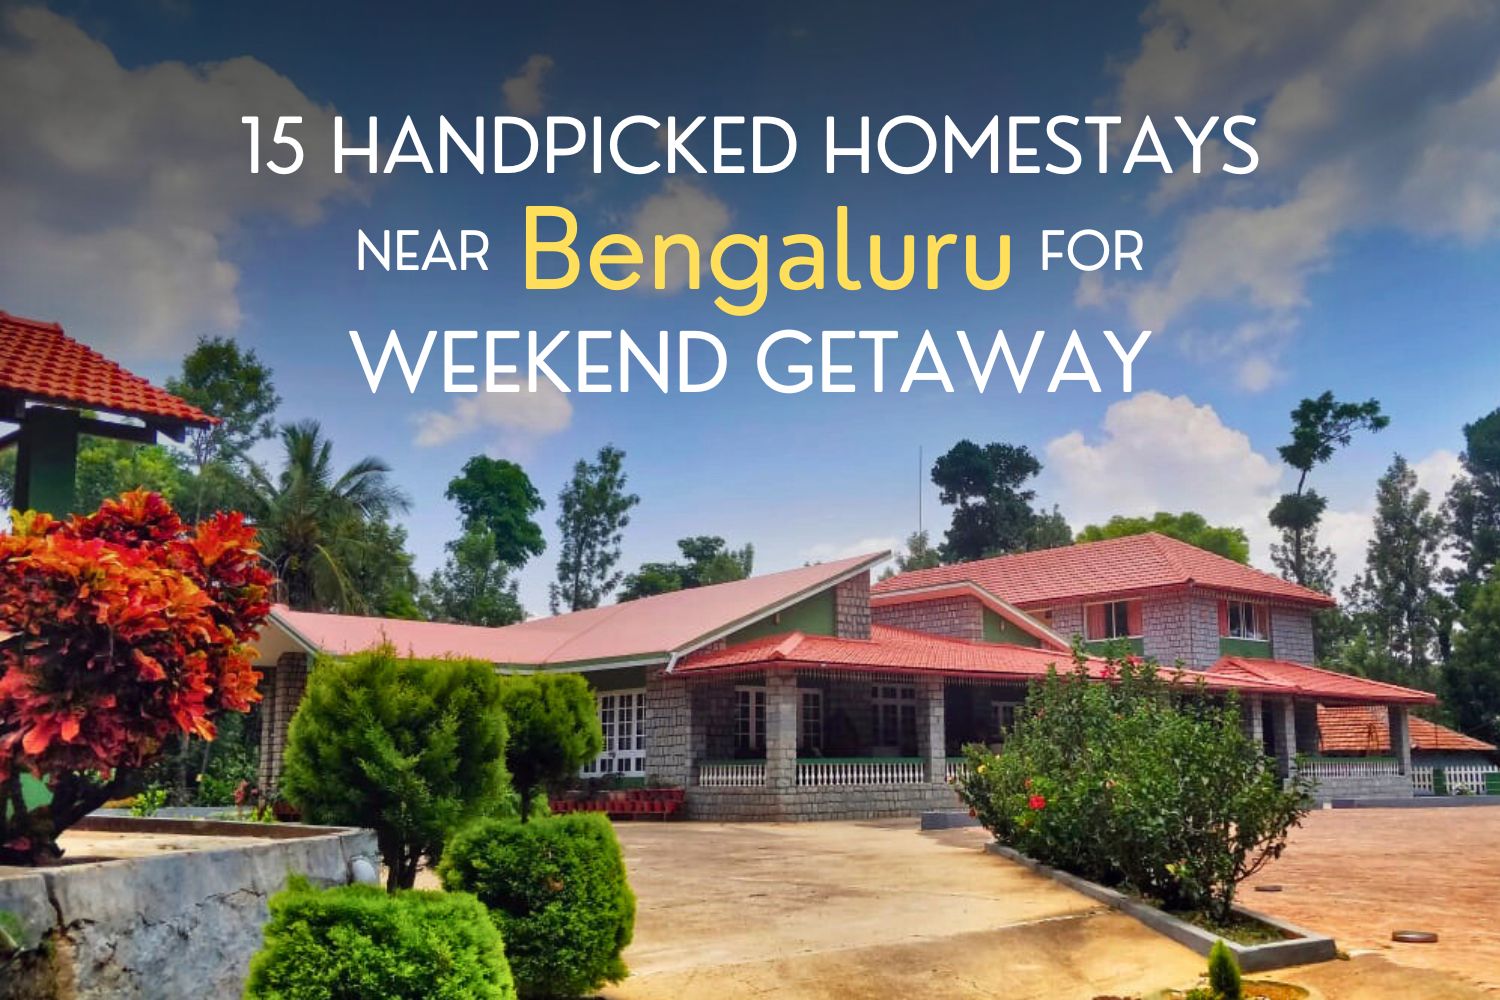 15 Handpicked Homestays near Bengaluru